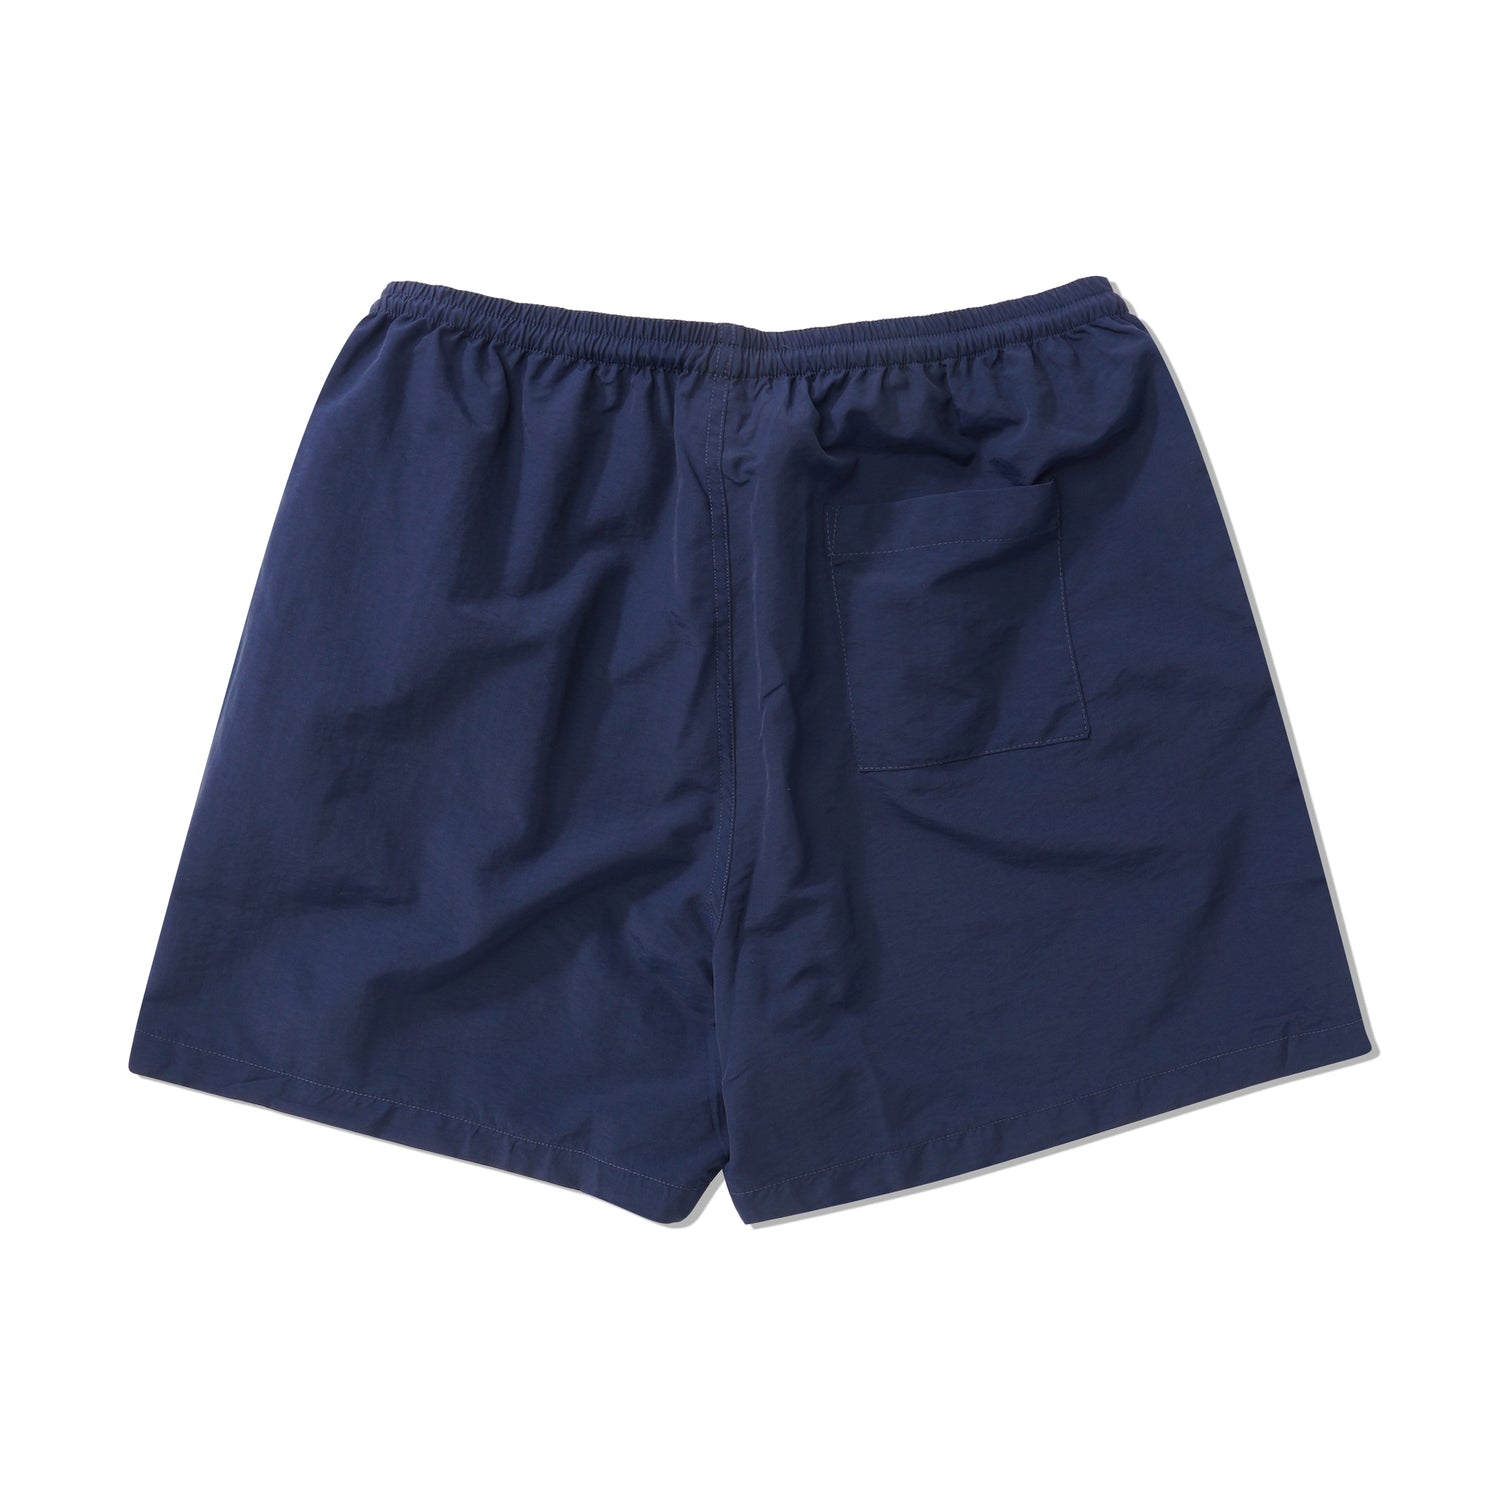 Wordmark 5" Nylon Shorts, Navy